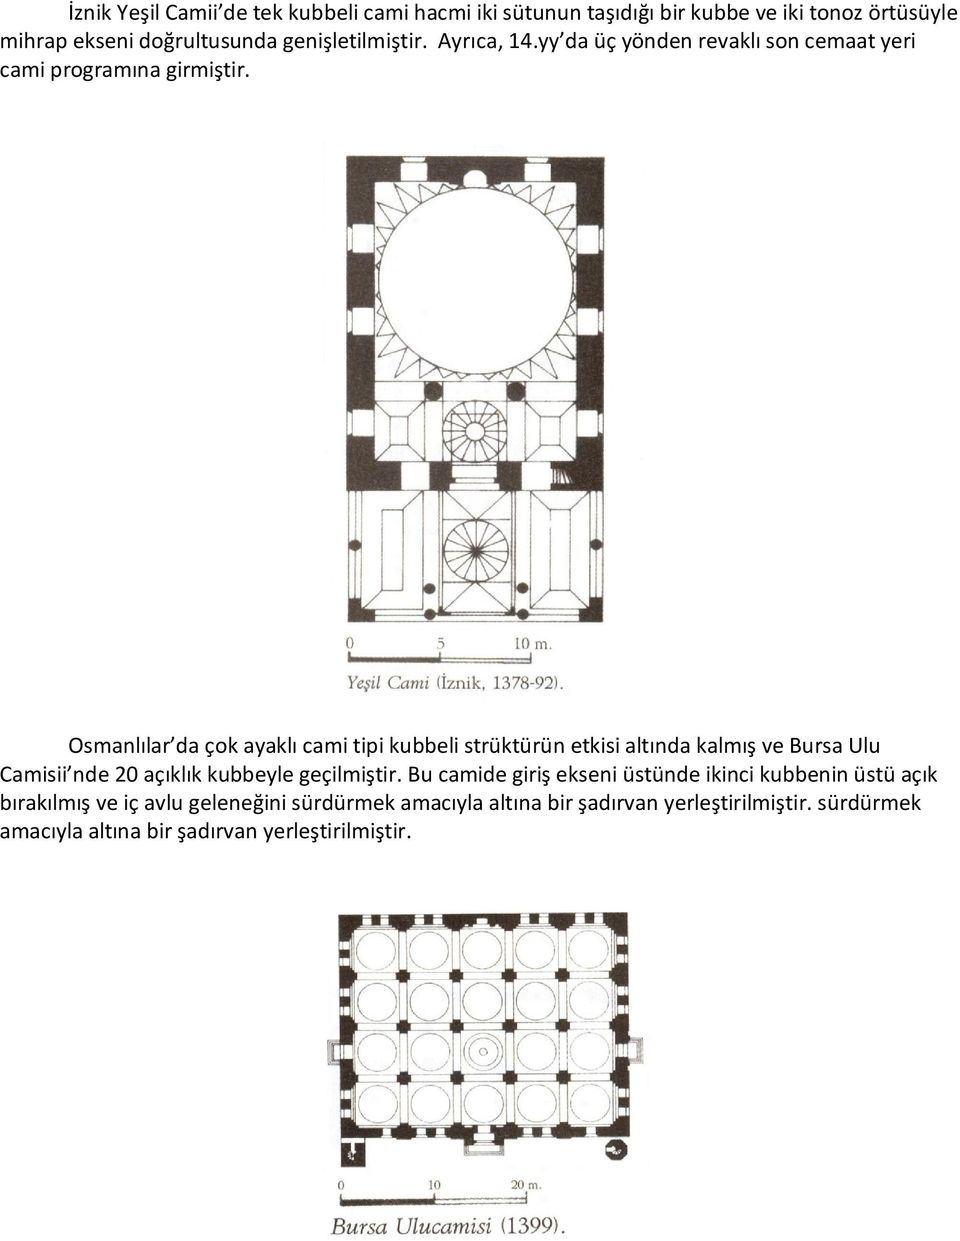 Osmanlılar da çok ayaklı cami tipi kubbeli strüktürün etkisi altında kalmış ve Bursa Ulu Camisii nde 20 açıklık kubbeyle geçilmiştir.